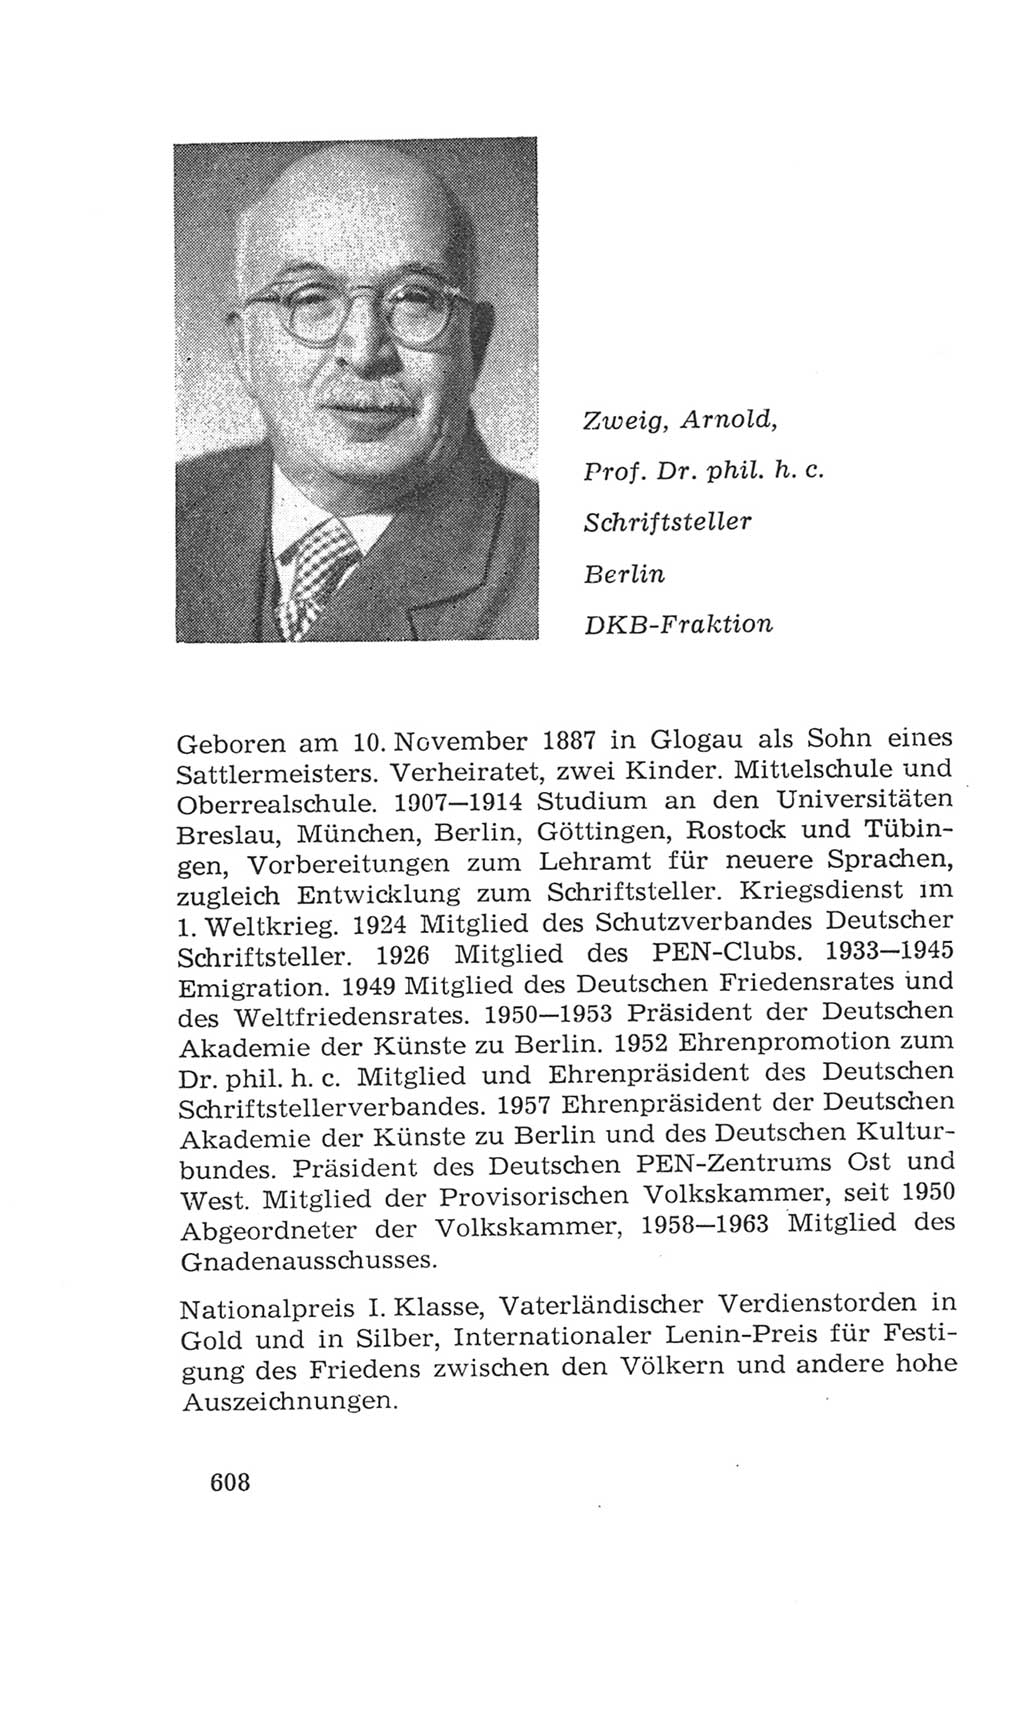 Volkskammer (VK) der Deutschen Demokratischen Republik (DDR), 4. Wahlperiode 1963-1967, Seite 608 (VK. DDR 4. WP. 1963-1967, S. 608)